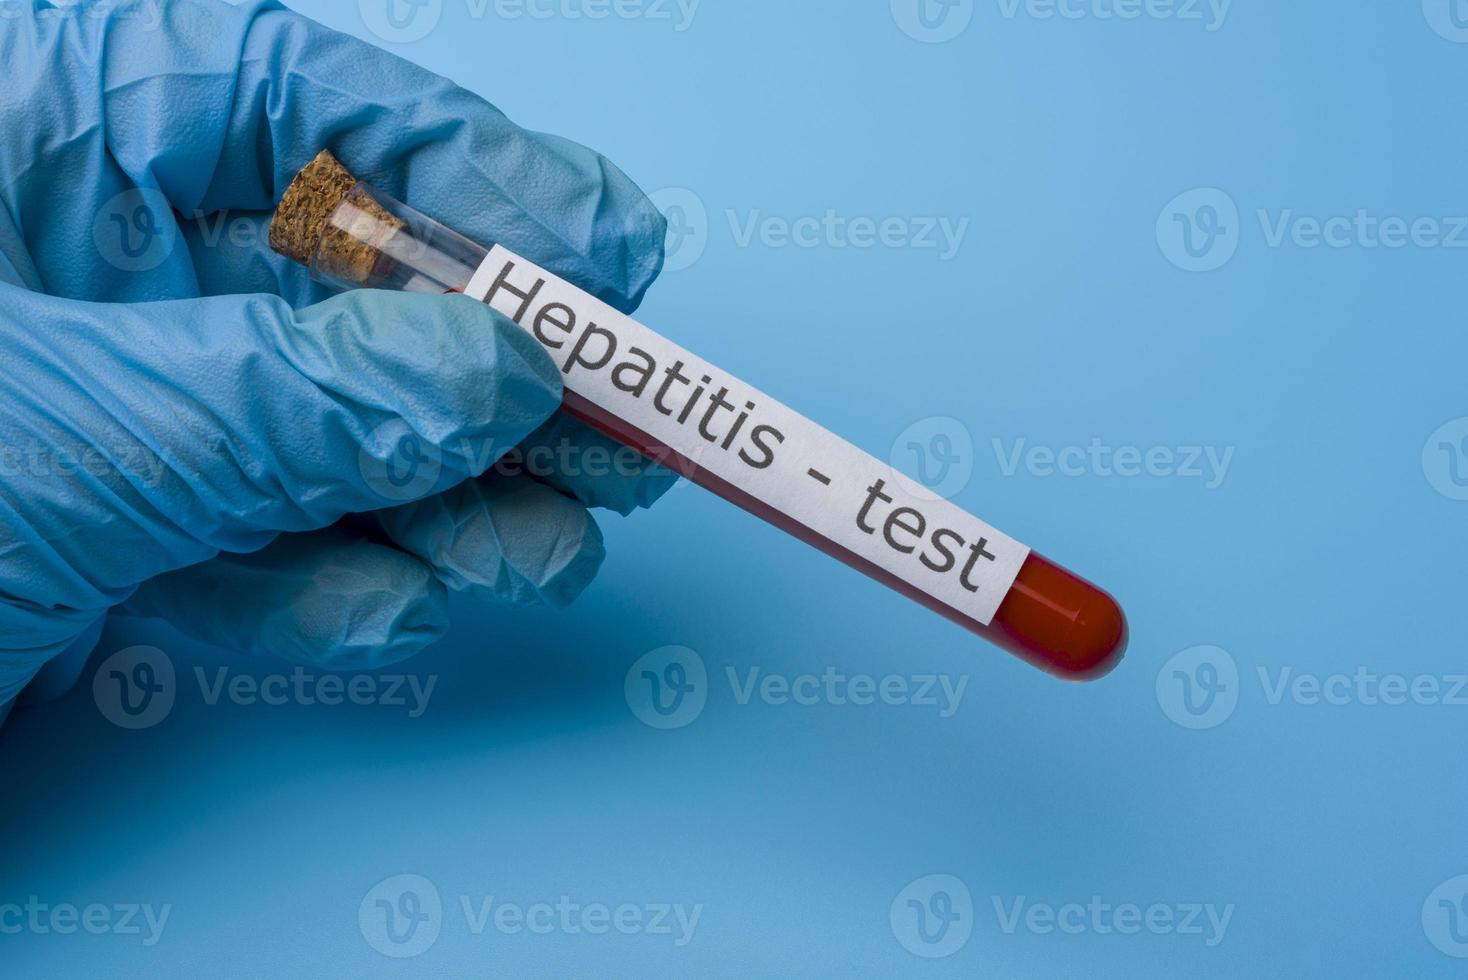 Hepatitis-Test, Blut im Reagenzglas. foto